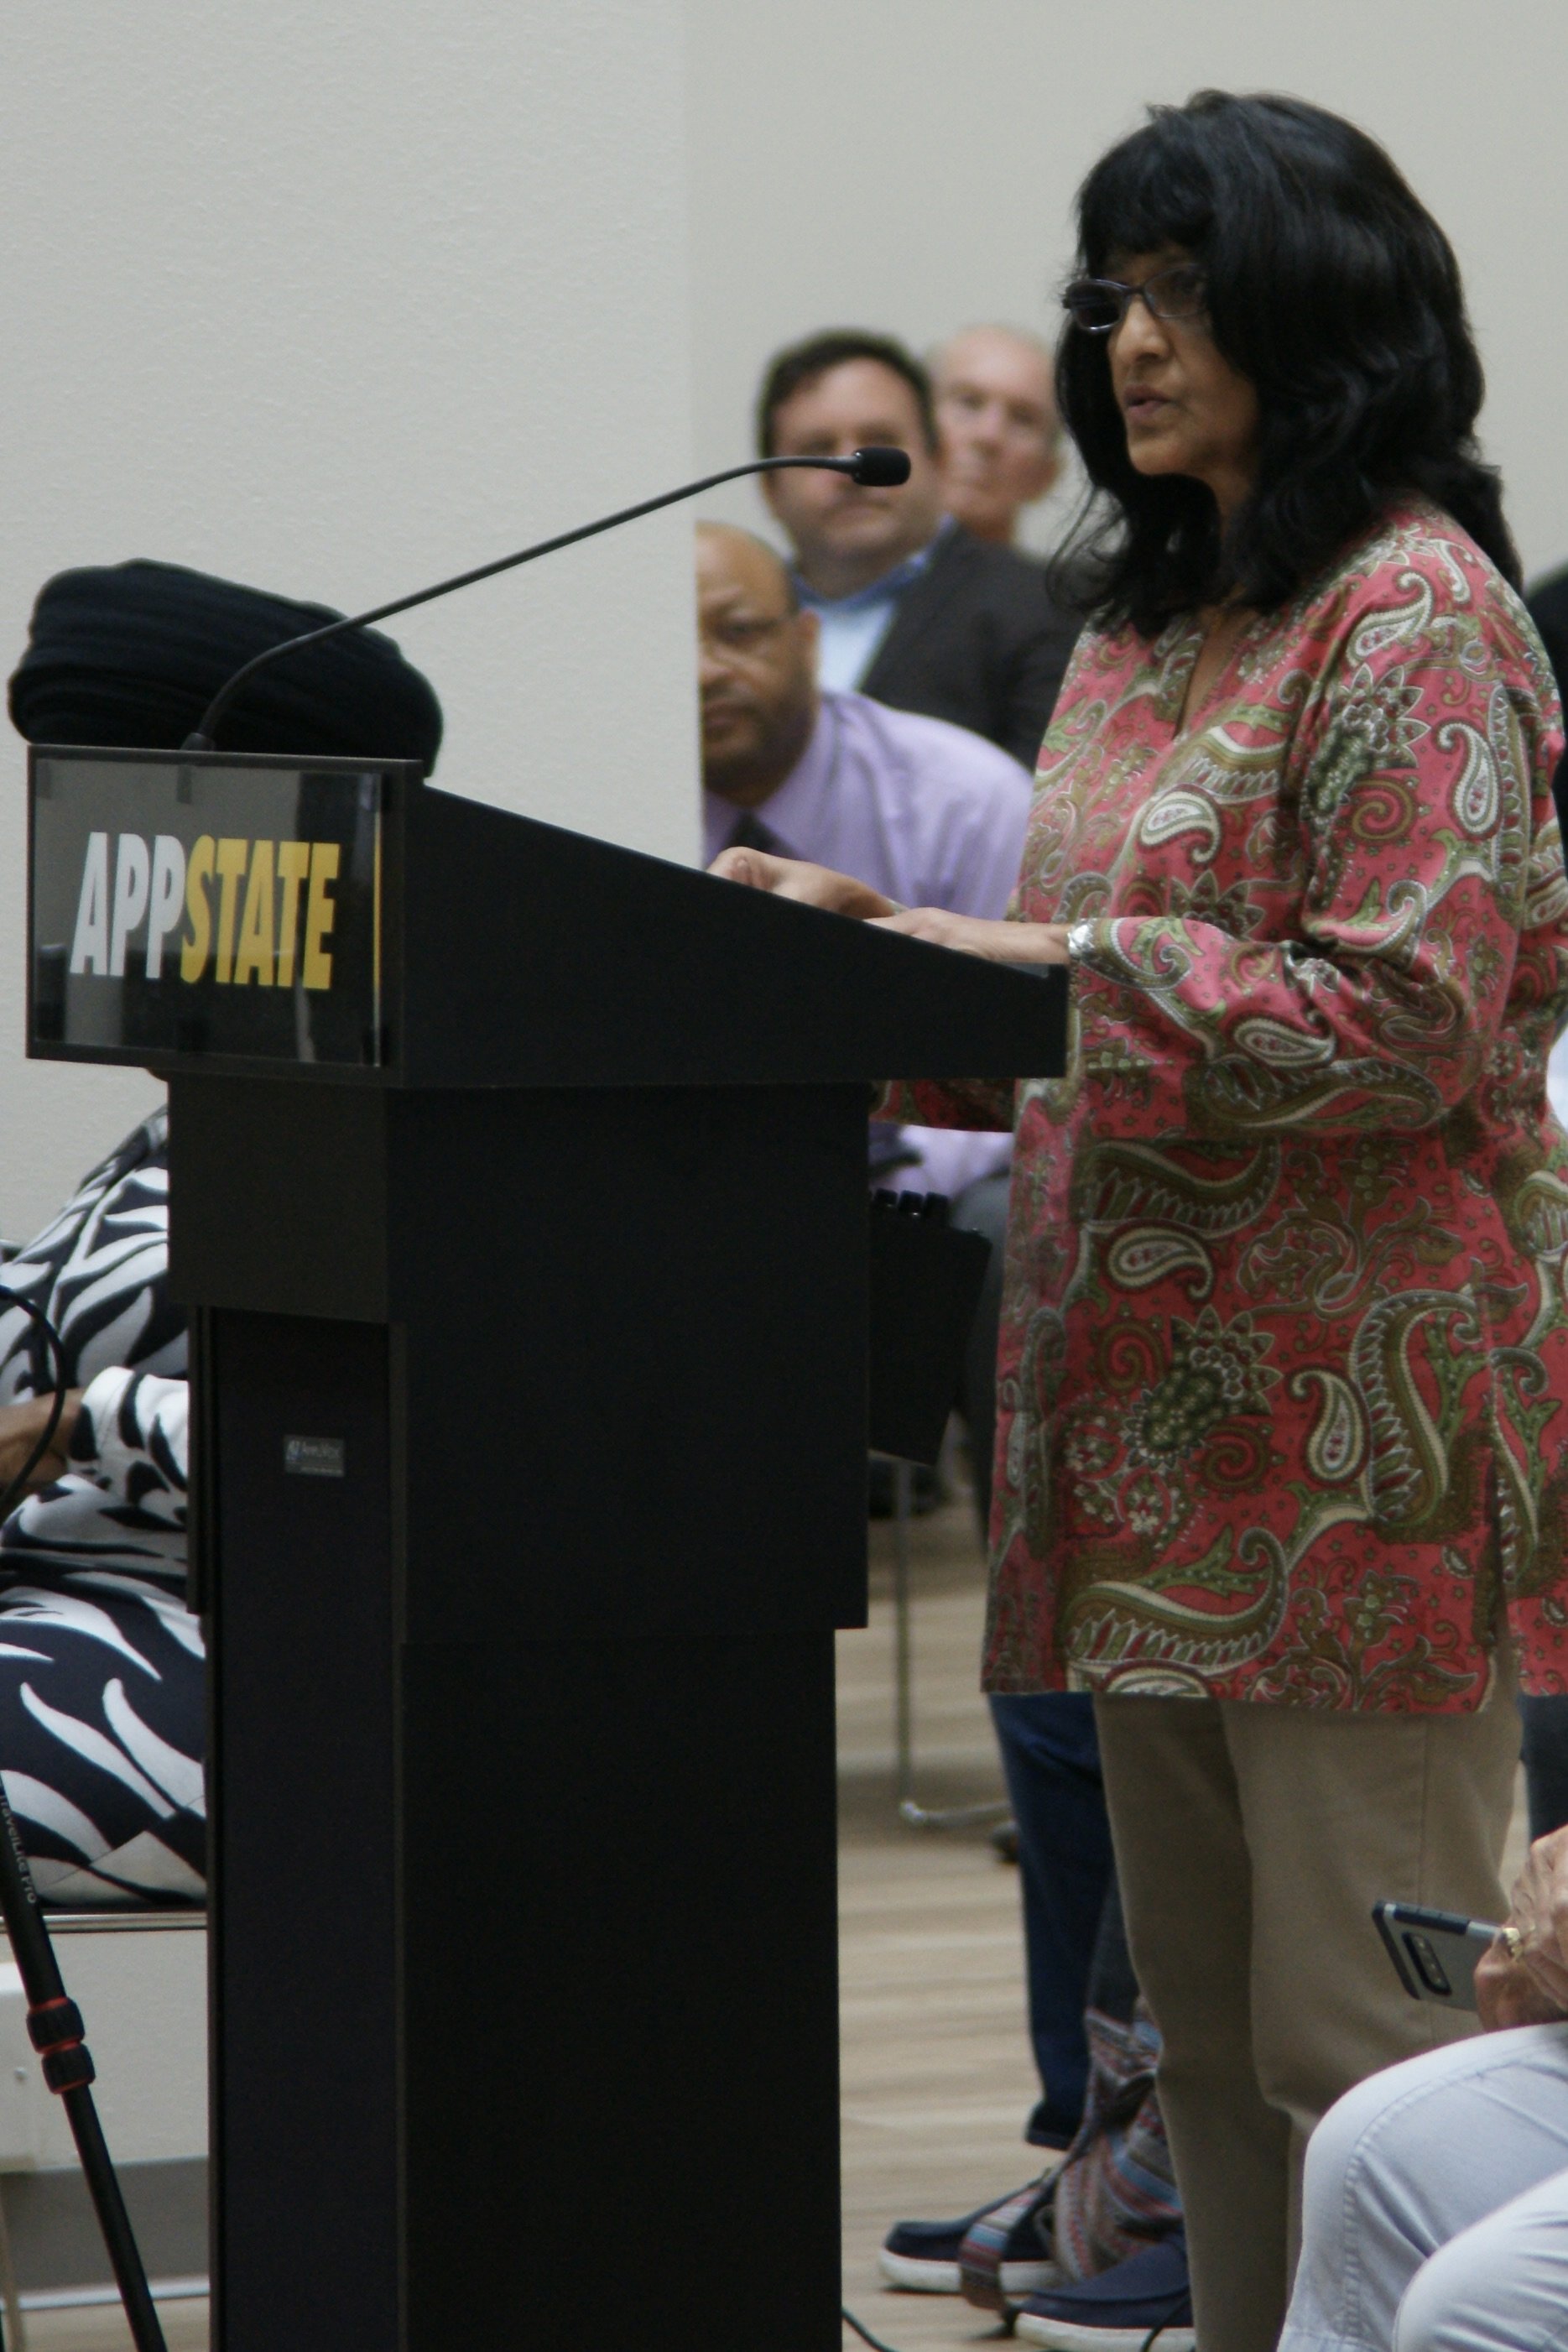 Priya Palmer spoke as a concerned Catawba County citizen